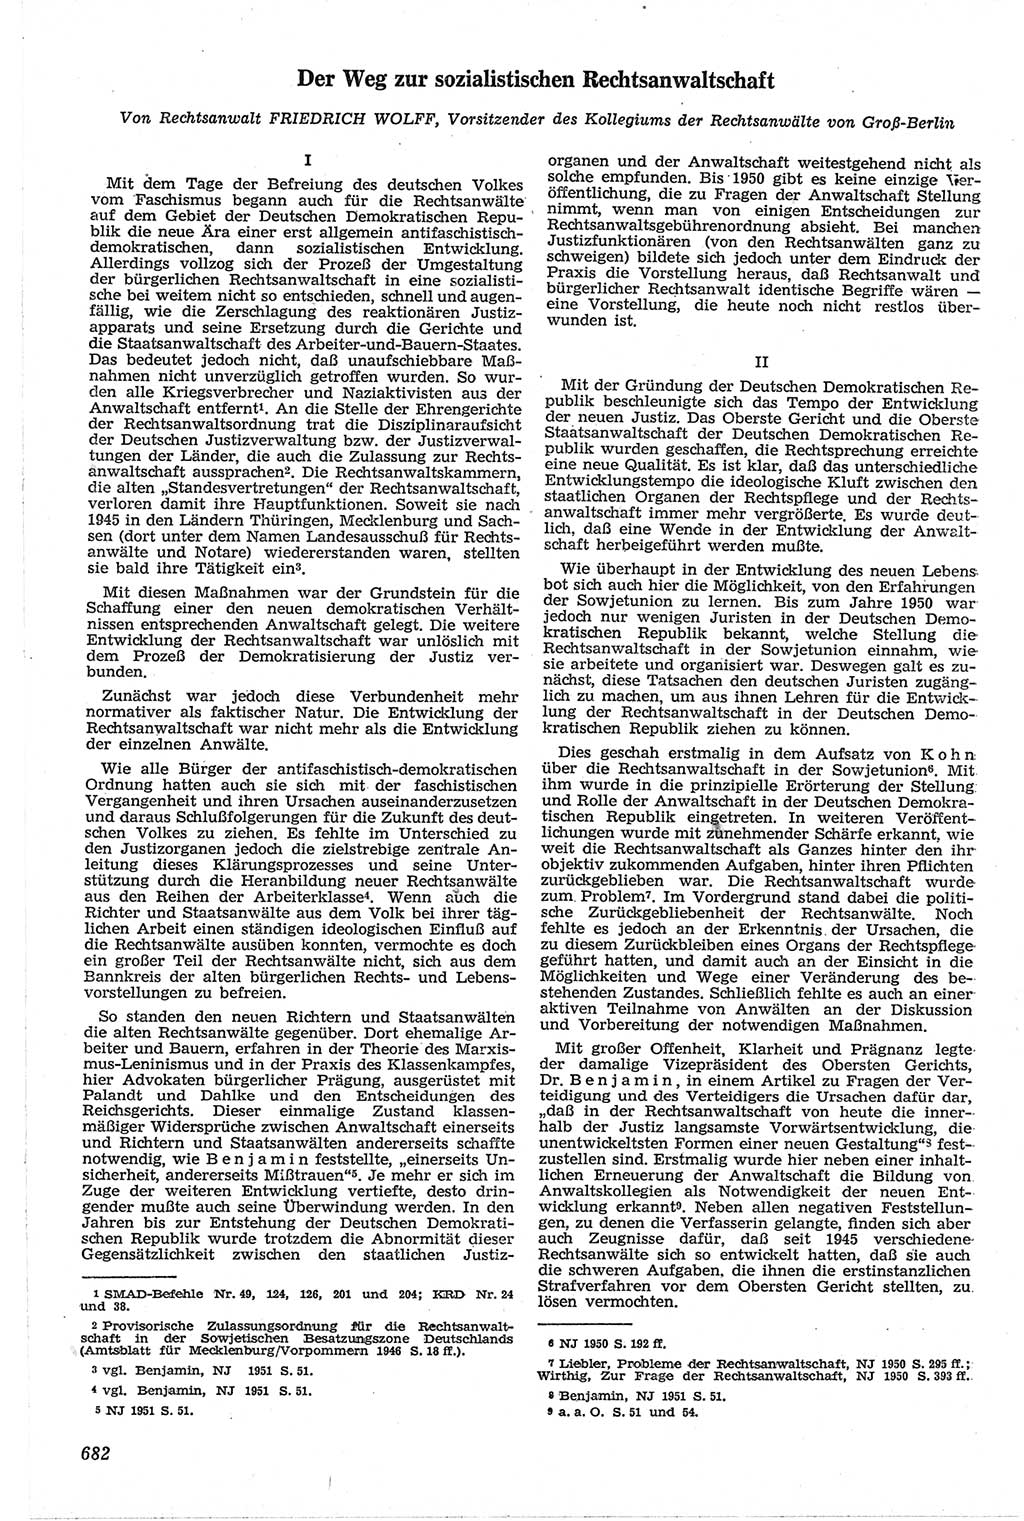 Neue Justiz (NJ), Zeitschrift für Recht und Rechtswissenschaft [Deutsche Demokratische Republik (DDR)], 13. Jahrgang 1959, Seite 682 (NJ DDR 1959, S. 682)